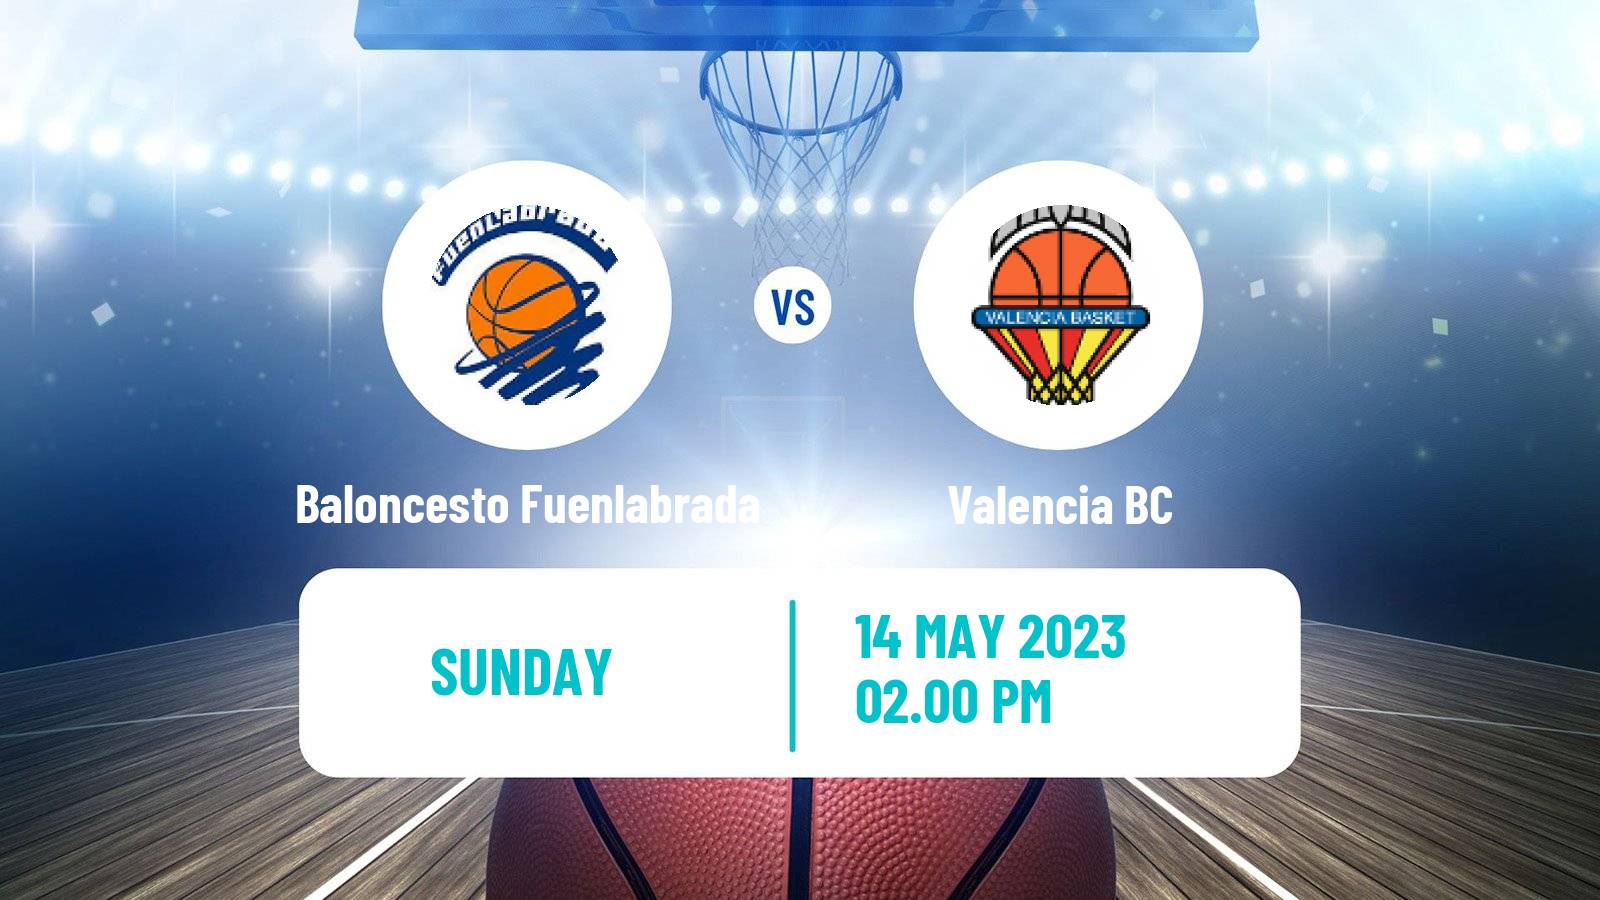 Basketball Spanish ACB League Baloncesto Fuenlabrada - Valencia